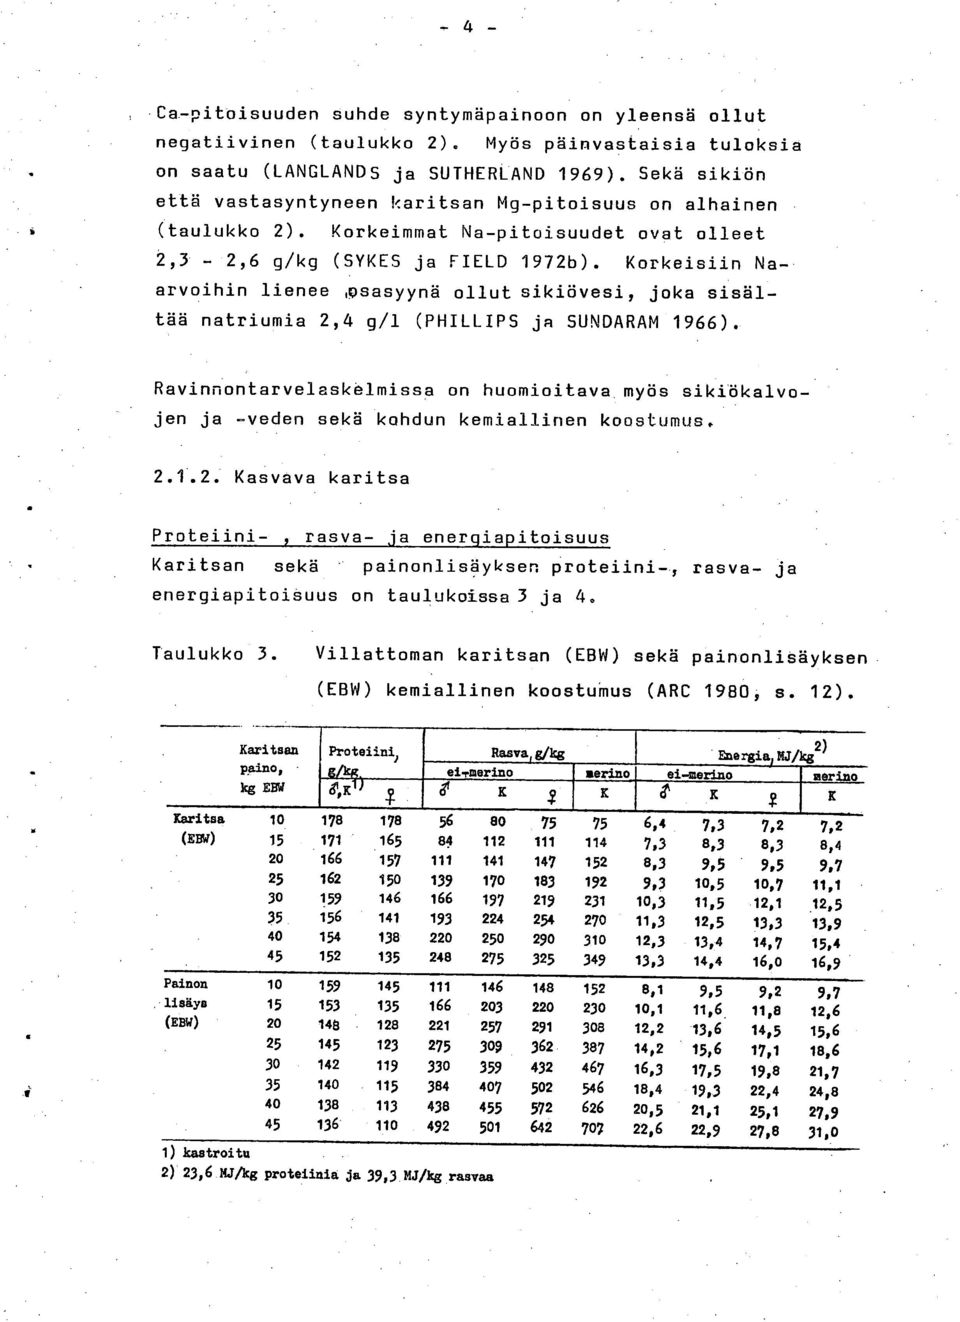 Korkeisiin Naarvoihin lienee xisasyynä ollut sikiövesi, joka sisältää natriumia 2,4 g/1 (PHILLIPS ja SUNDARAM 1966).